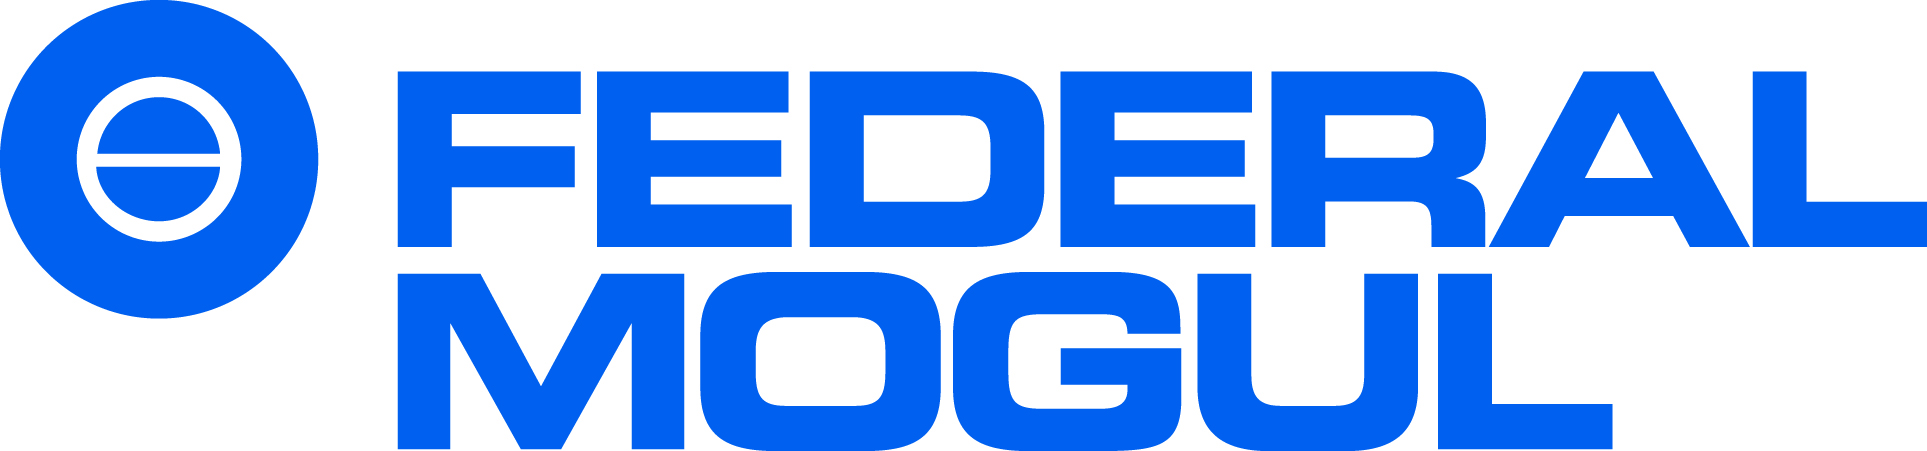 GARAGE PATTON - logo Federal Mogul